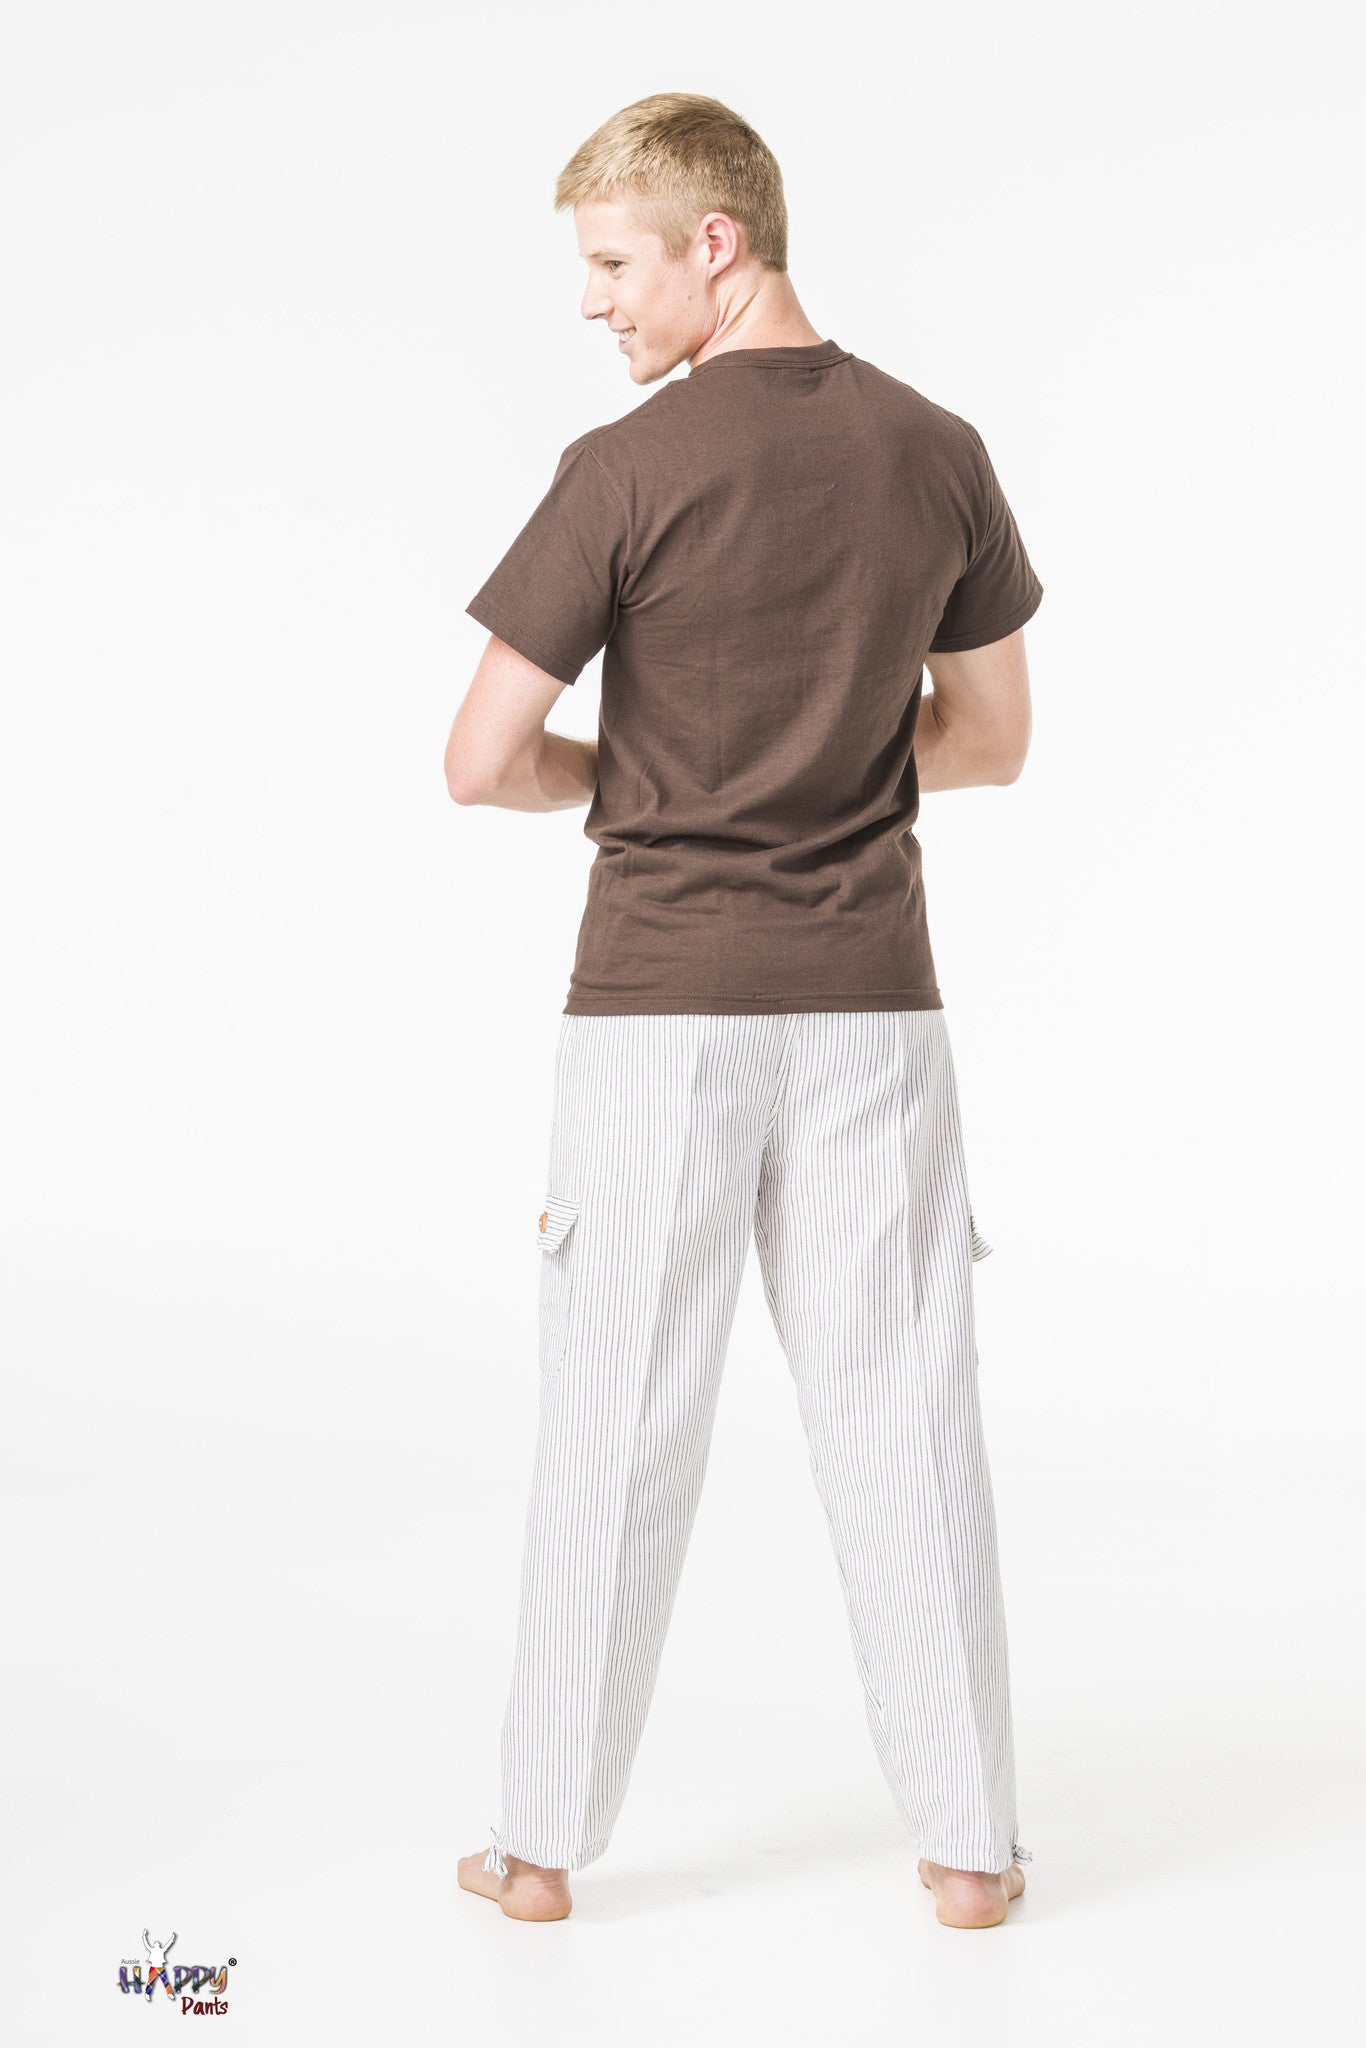 White Zirconia Cotton Pants - Happy Pants - 3